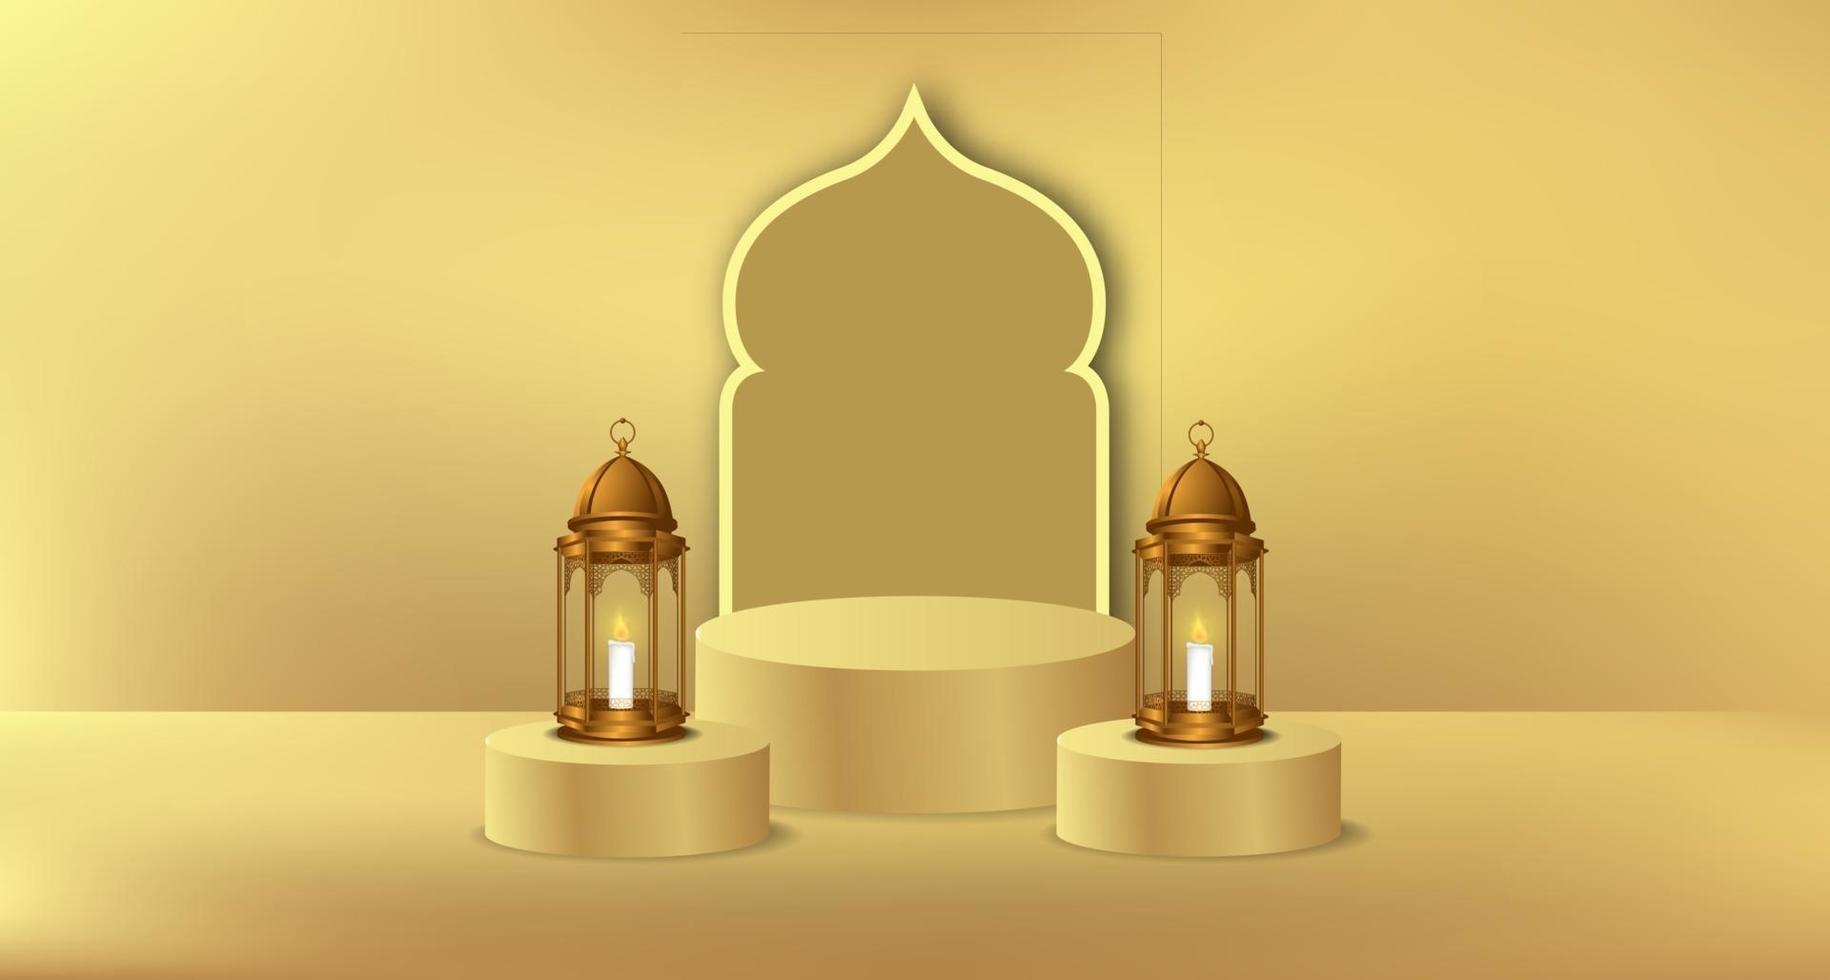 islamisches Ramadan-Ereignis mit goldener Laterne und Zylinderpodestproduktanzeigevorlage vektor